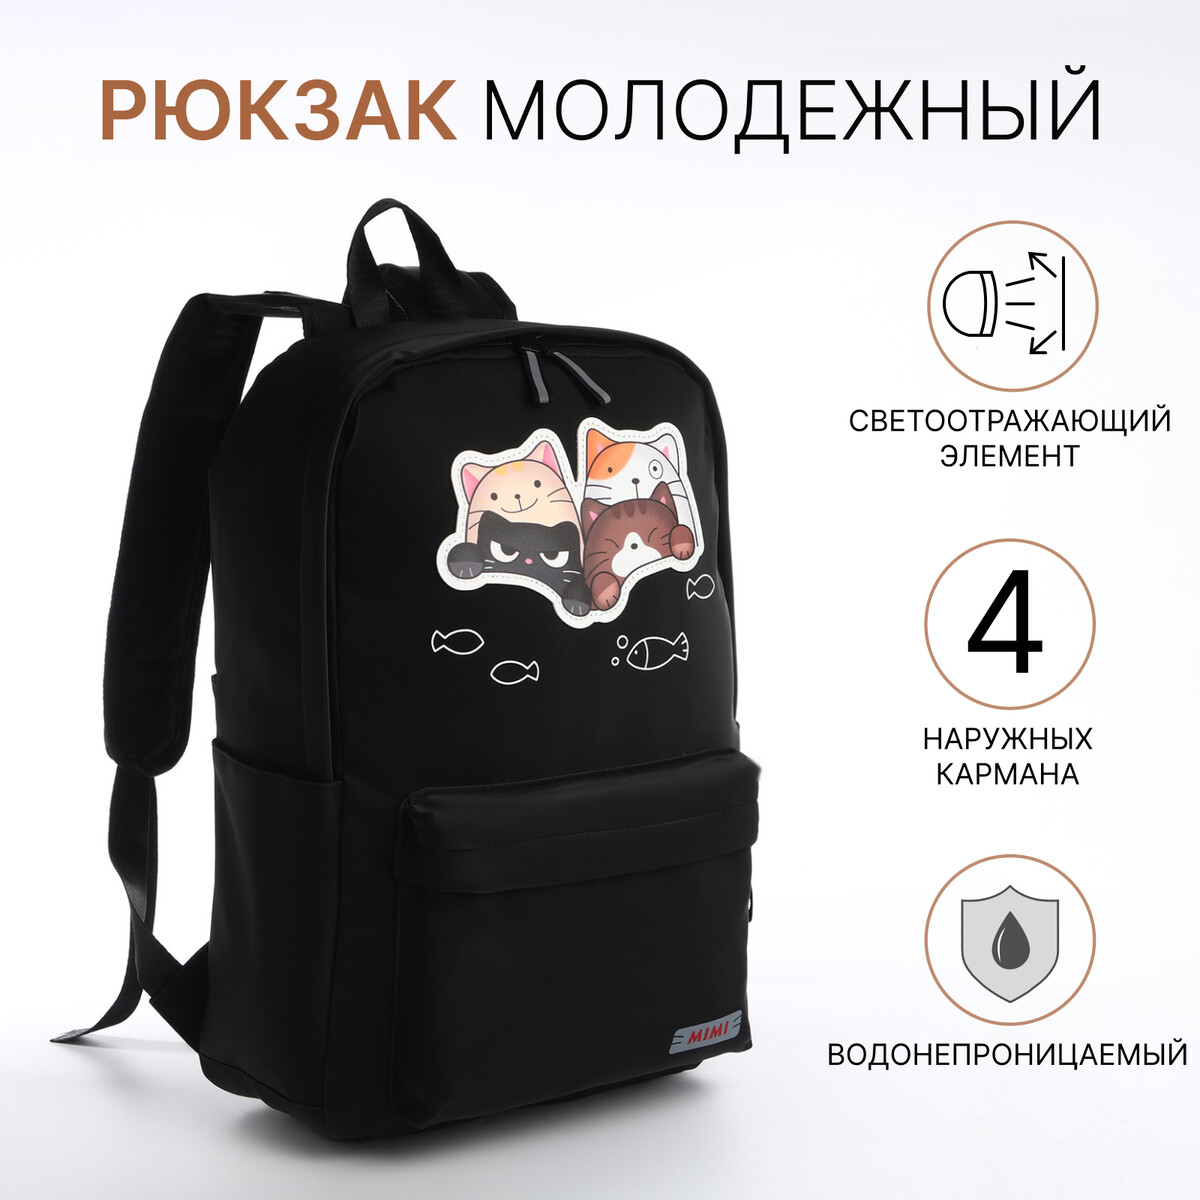 Рюкзак молодежный из текстиля на молнии, 4 кармана, цвет черный рюкзак молодежный grizzly с карманом для ноутбука 13 для мальчика rb 456 3 2